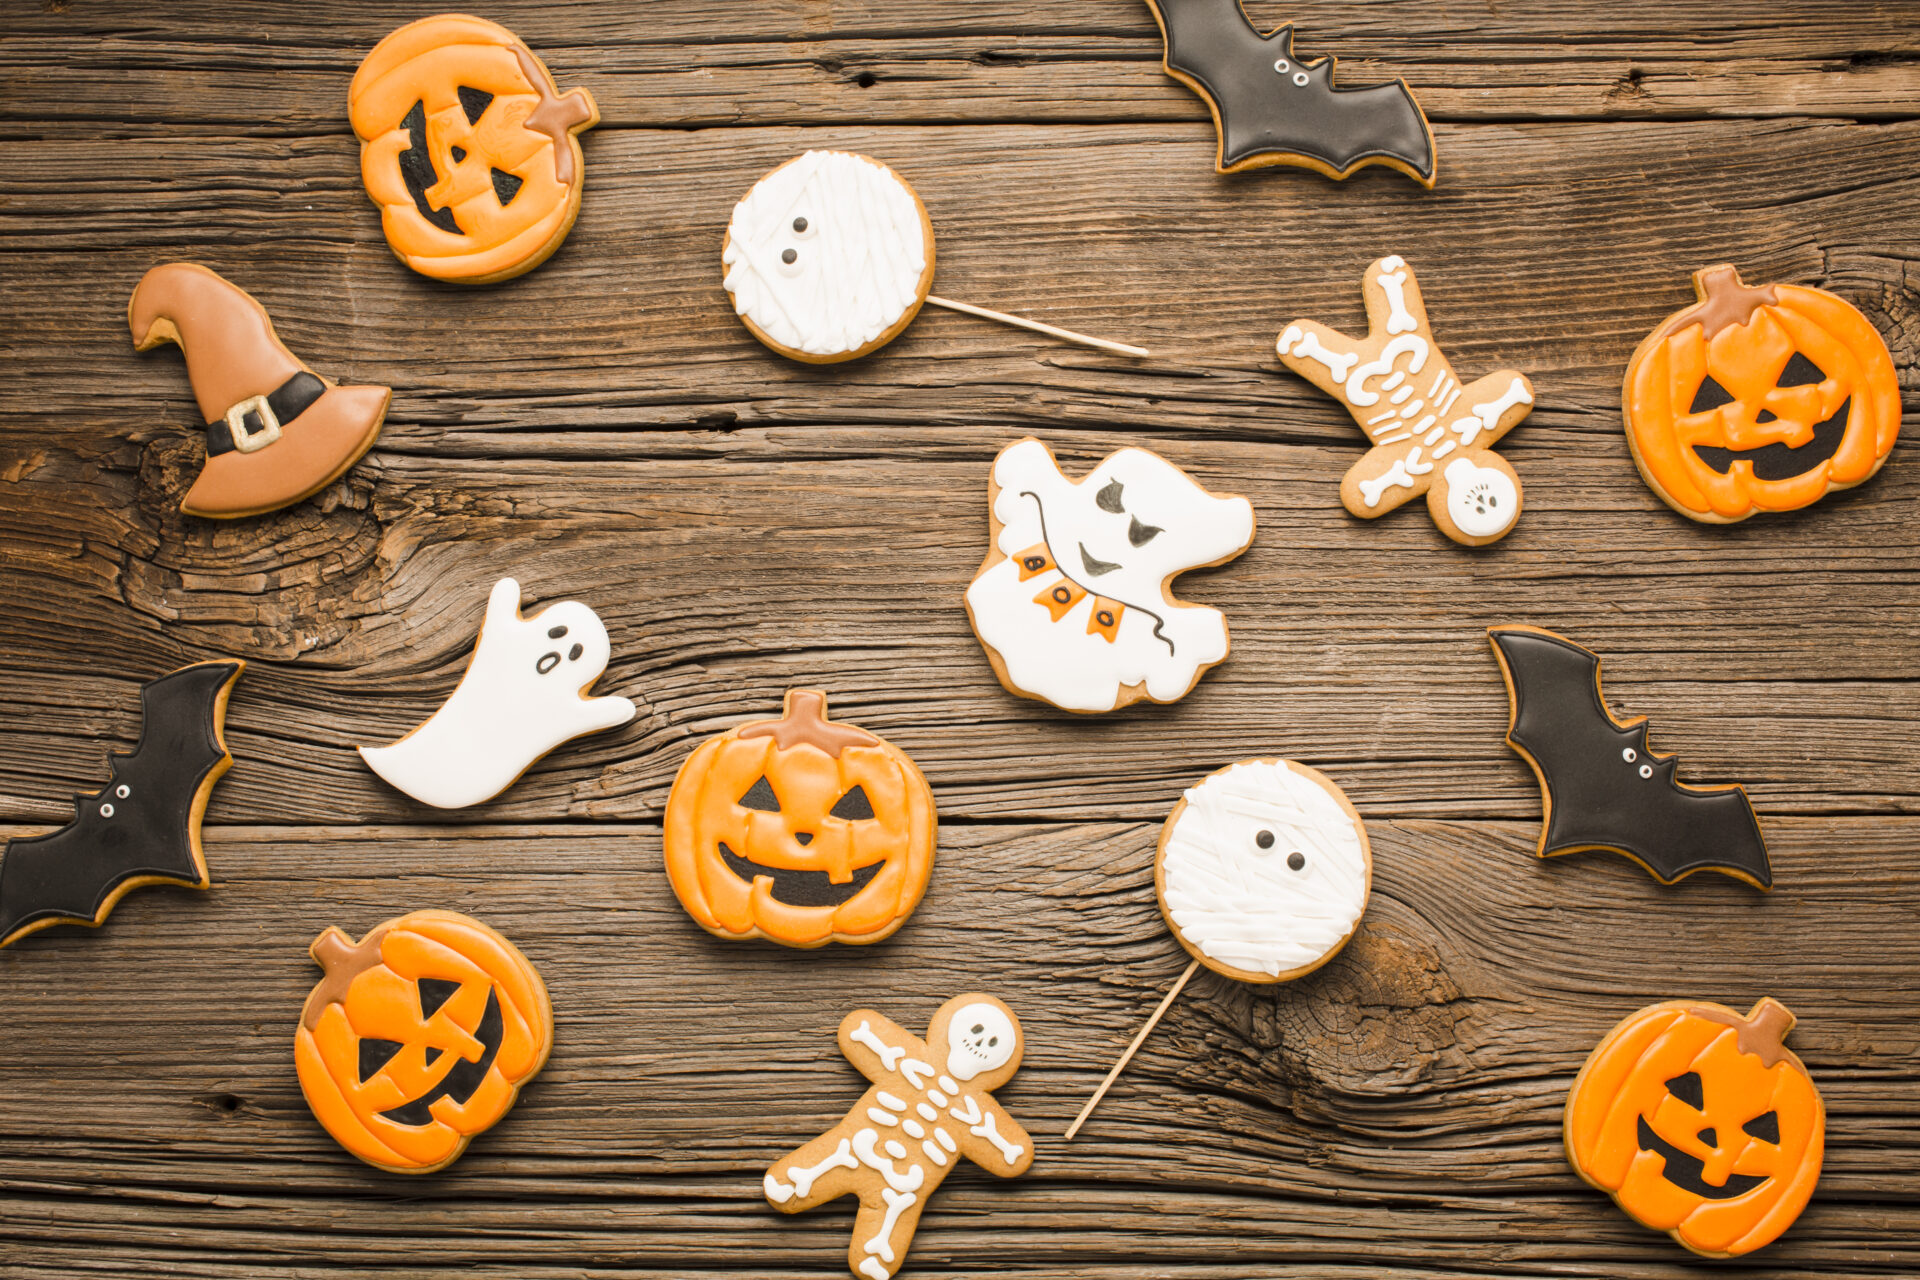 Doces ou travessuras: o Halloween impulsiona as vendas?